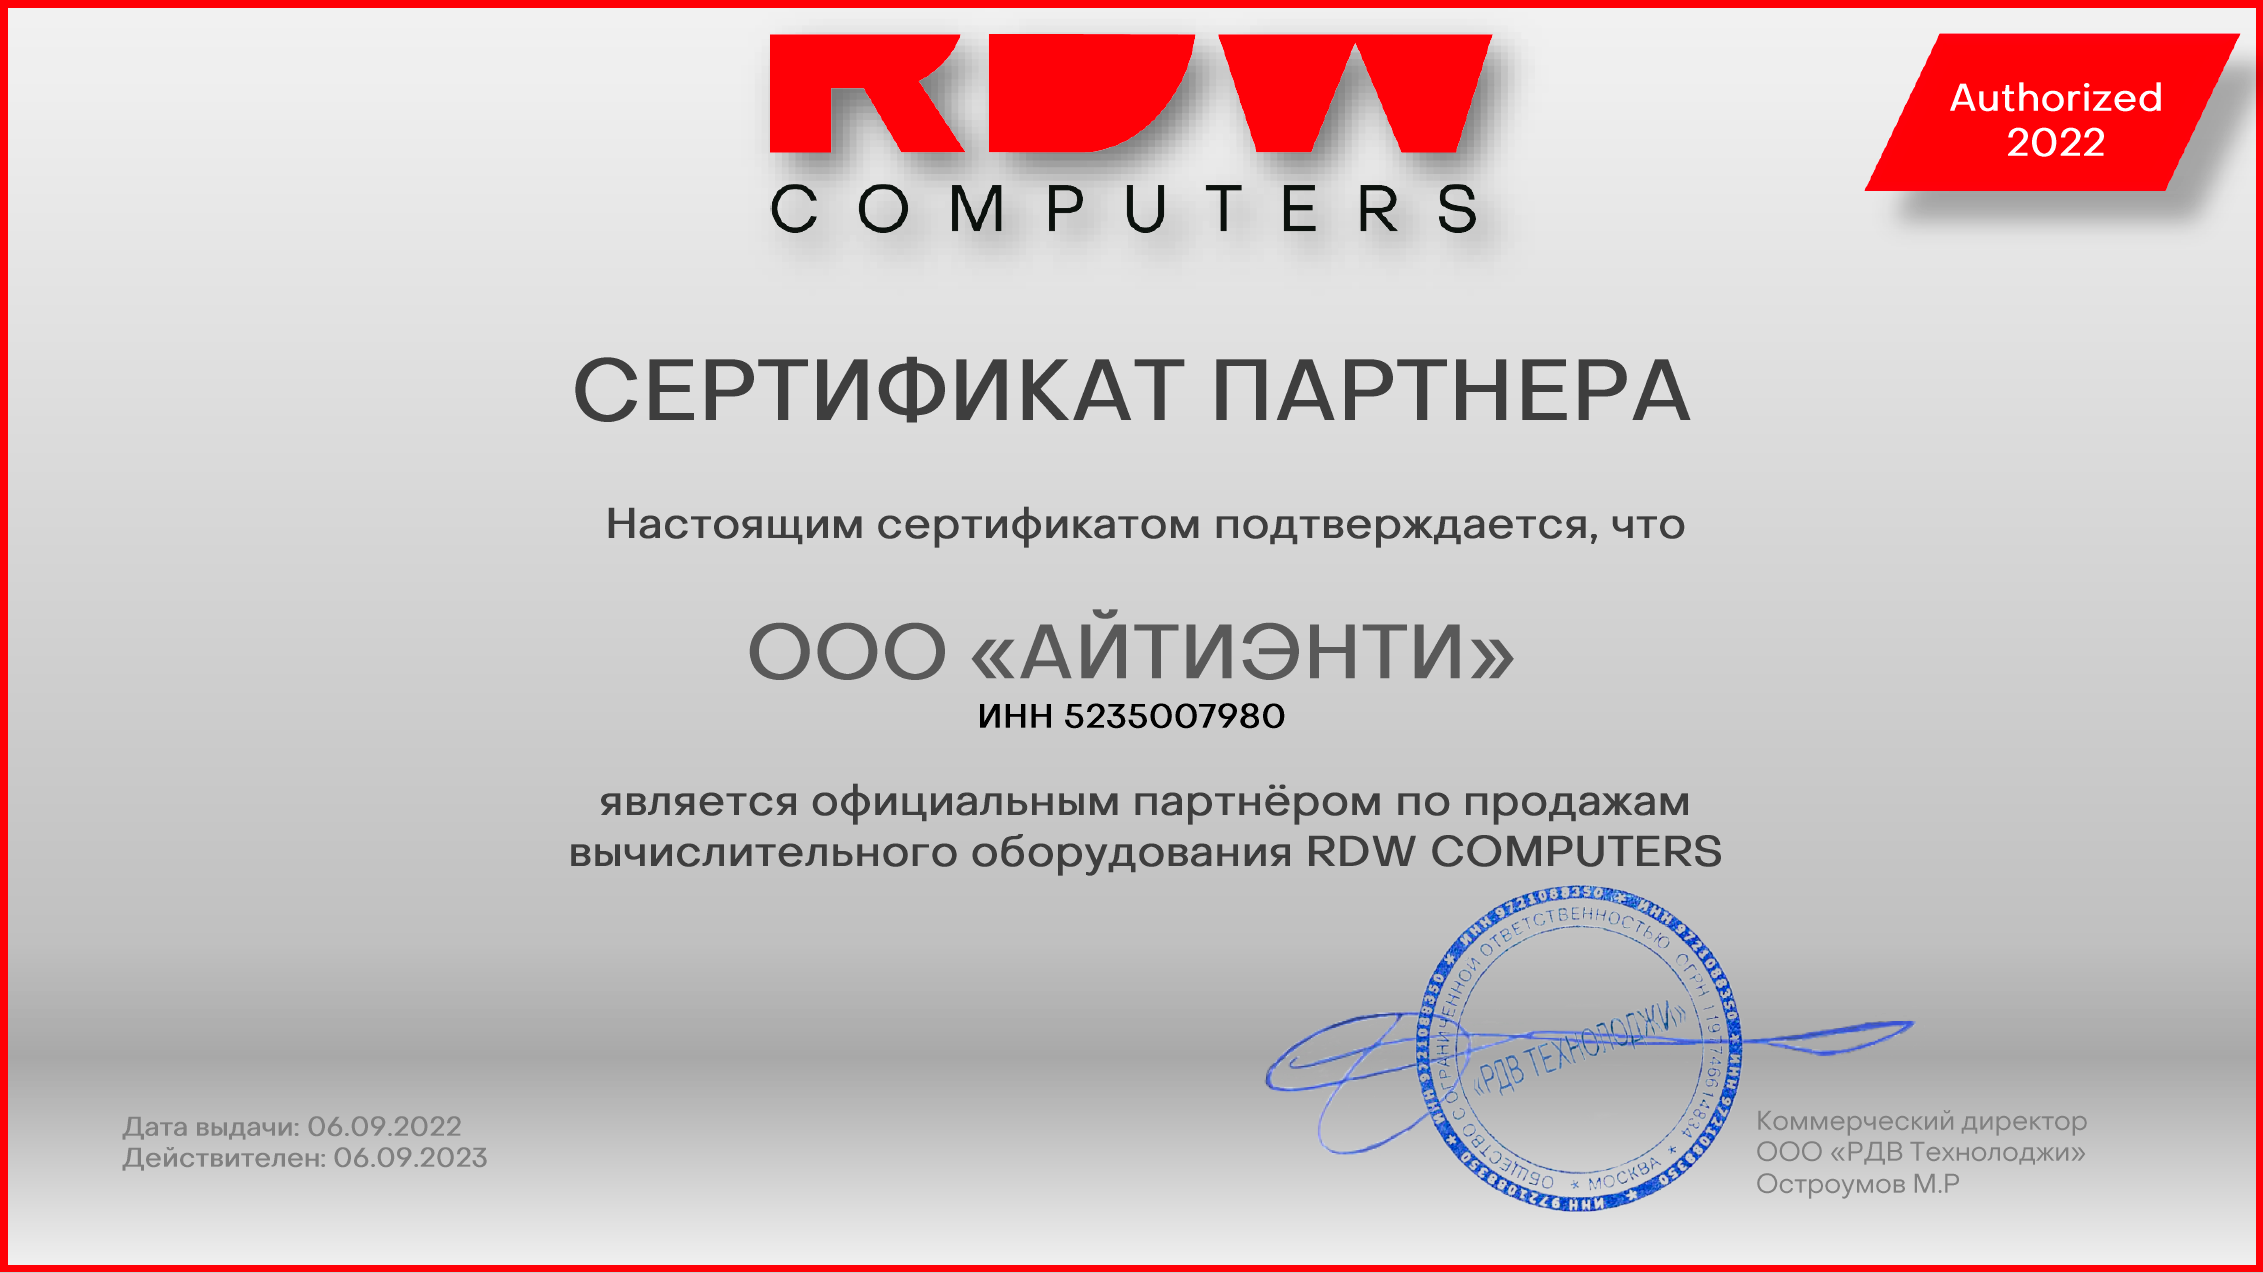 Компания АЙТИЭНТИ получила статус официального партнёра по продажам вычислительного оборудования RDW COMPUTERS